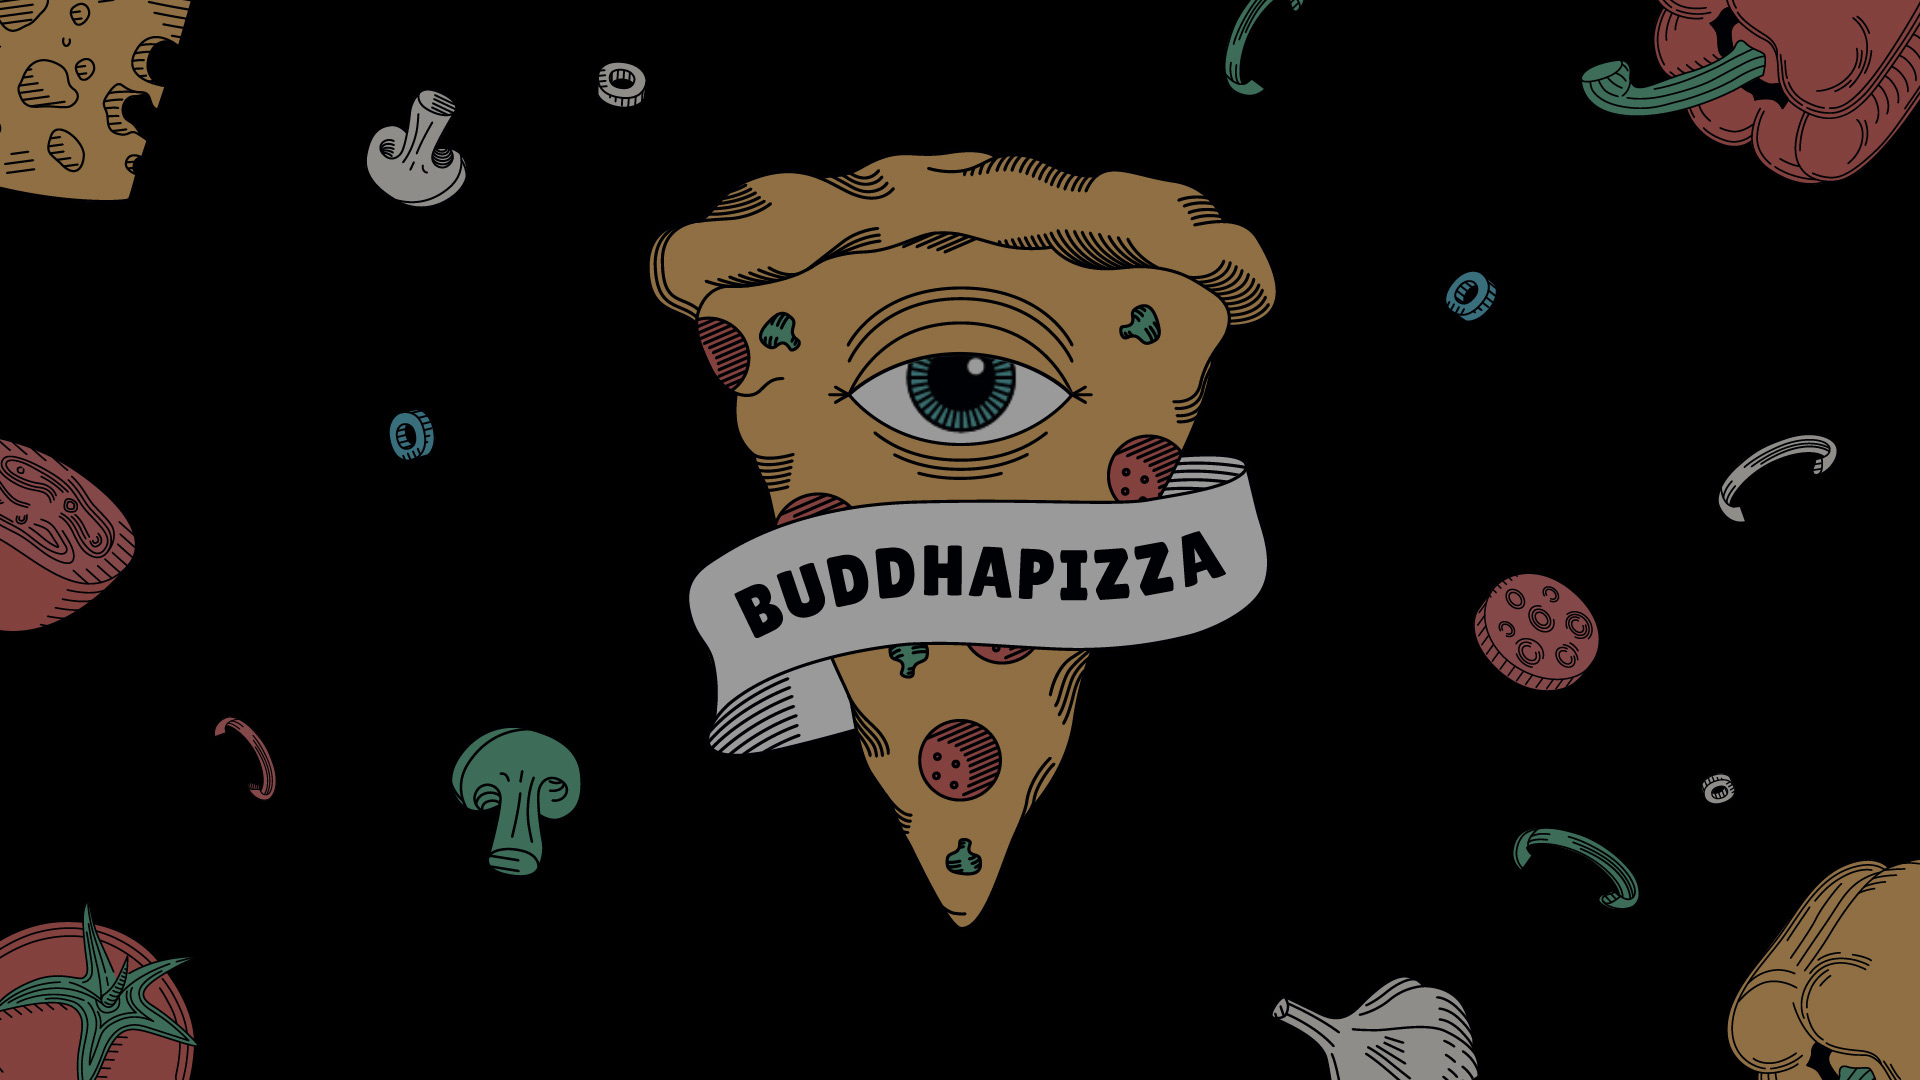 Buddhapizza